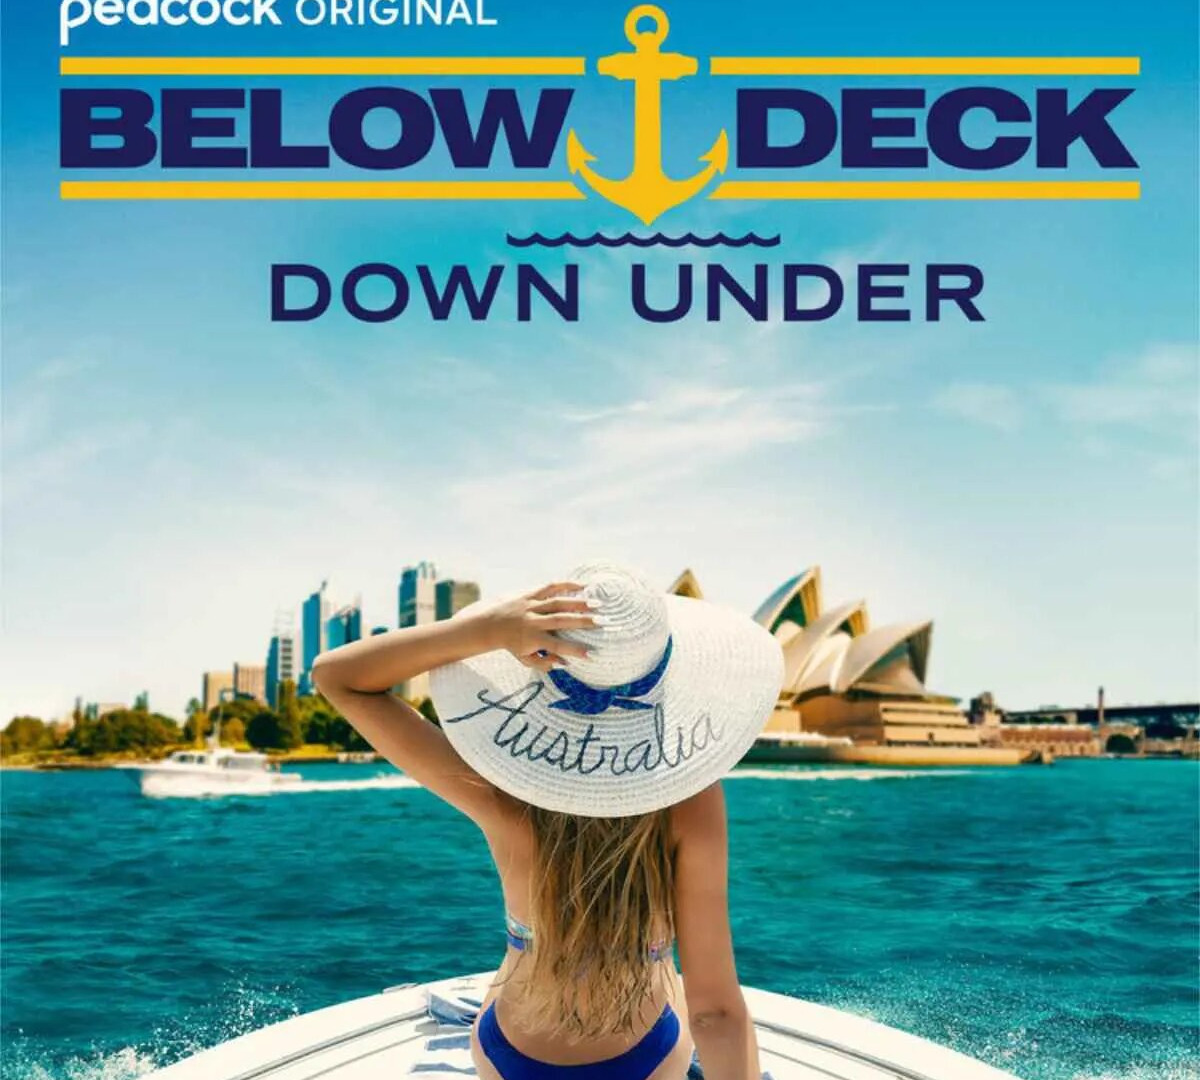 Show Below Deck Down Under